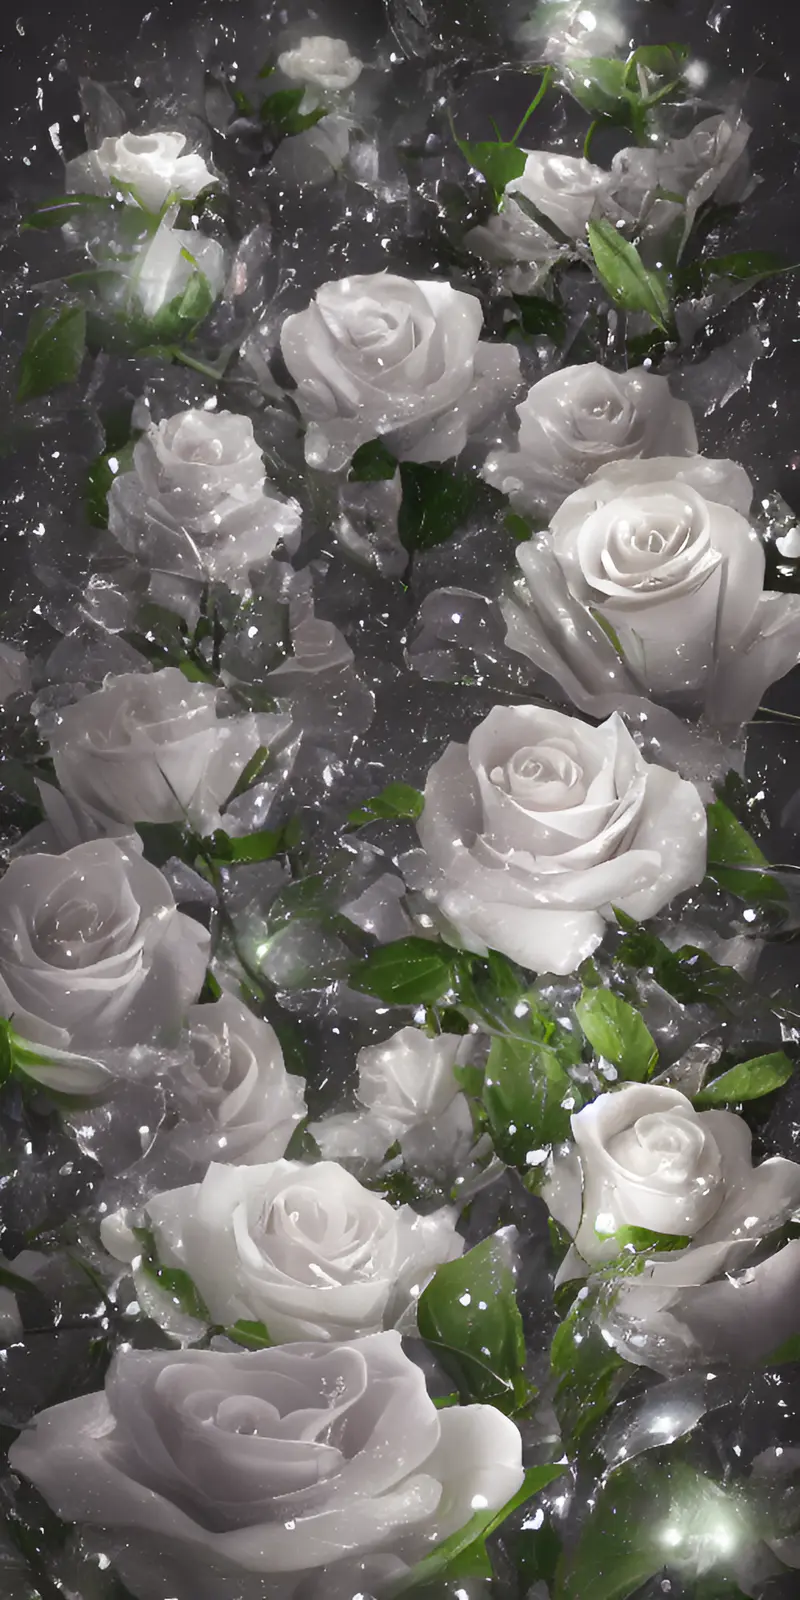 白玫瑰寓意着你是对方的初恋